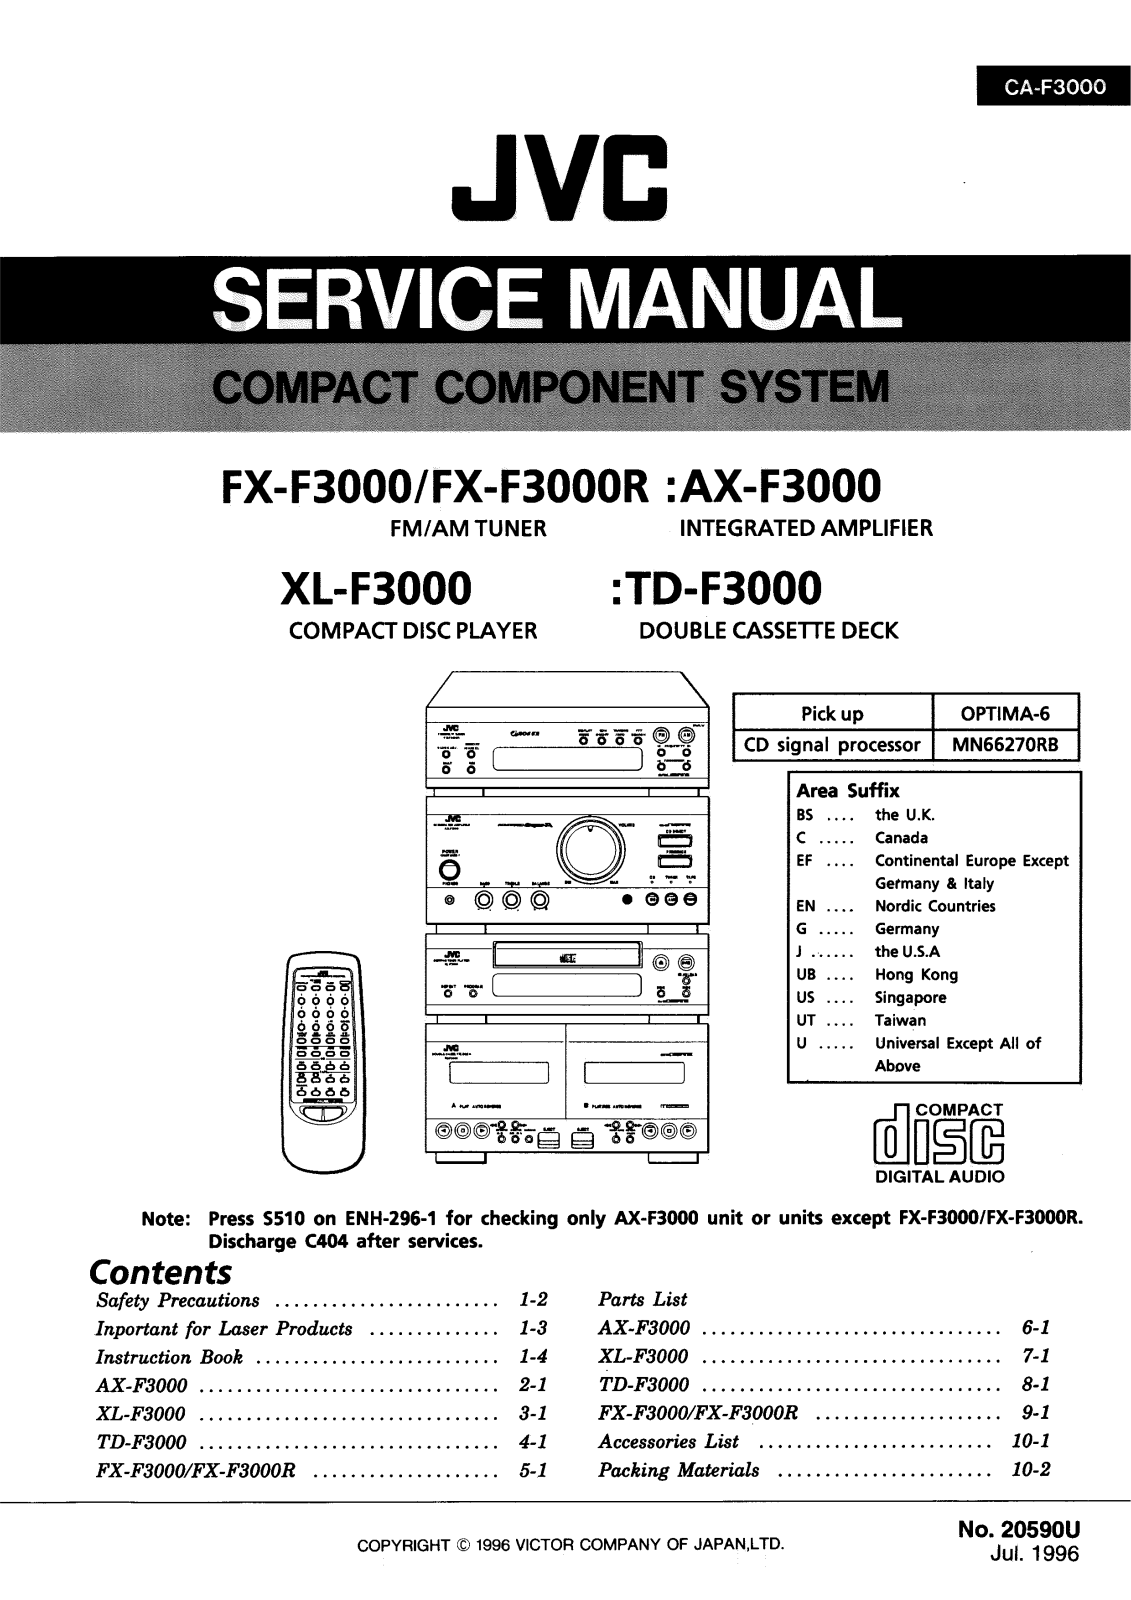 Jvc FX-F3000, FX-F3000-R Service Manual